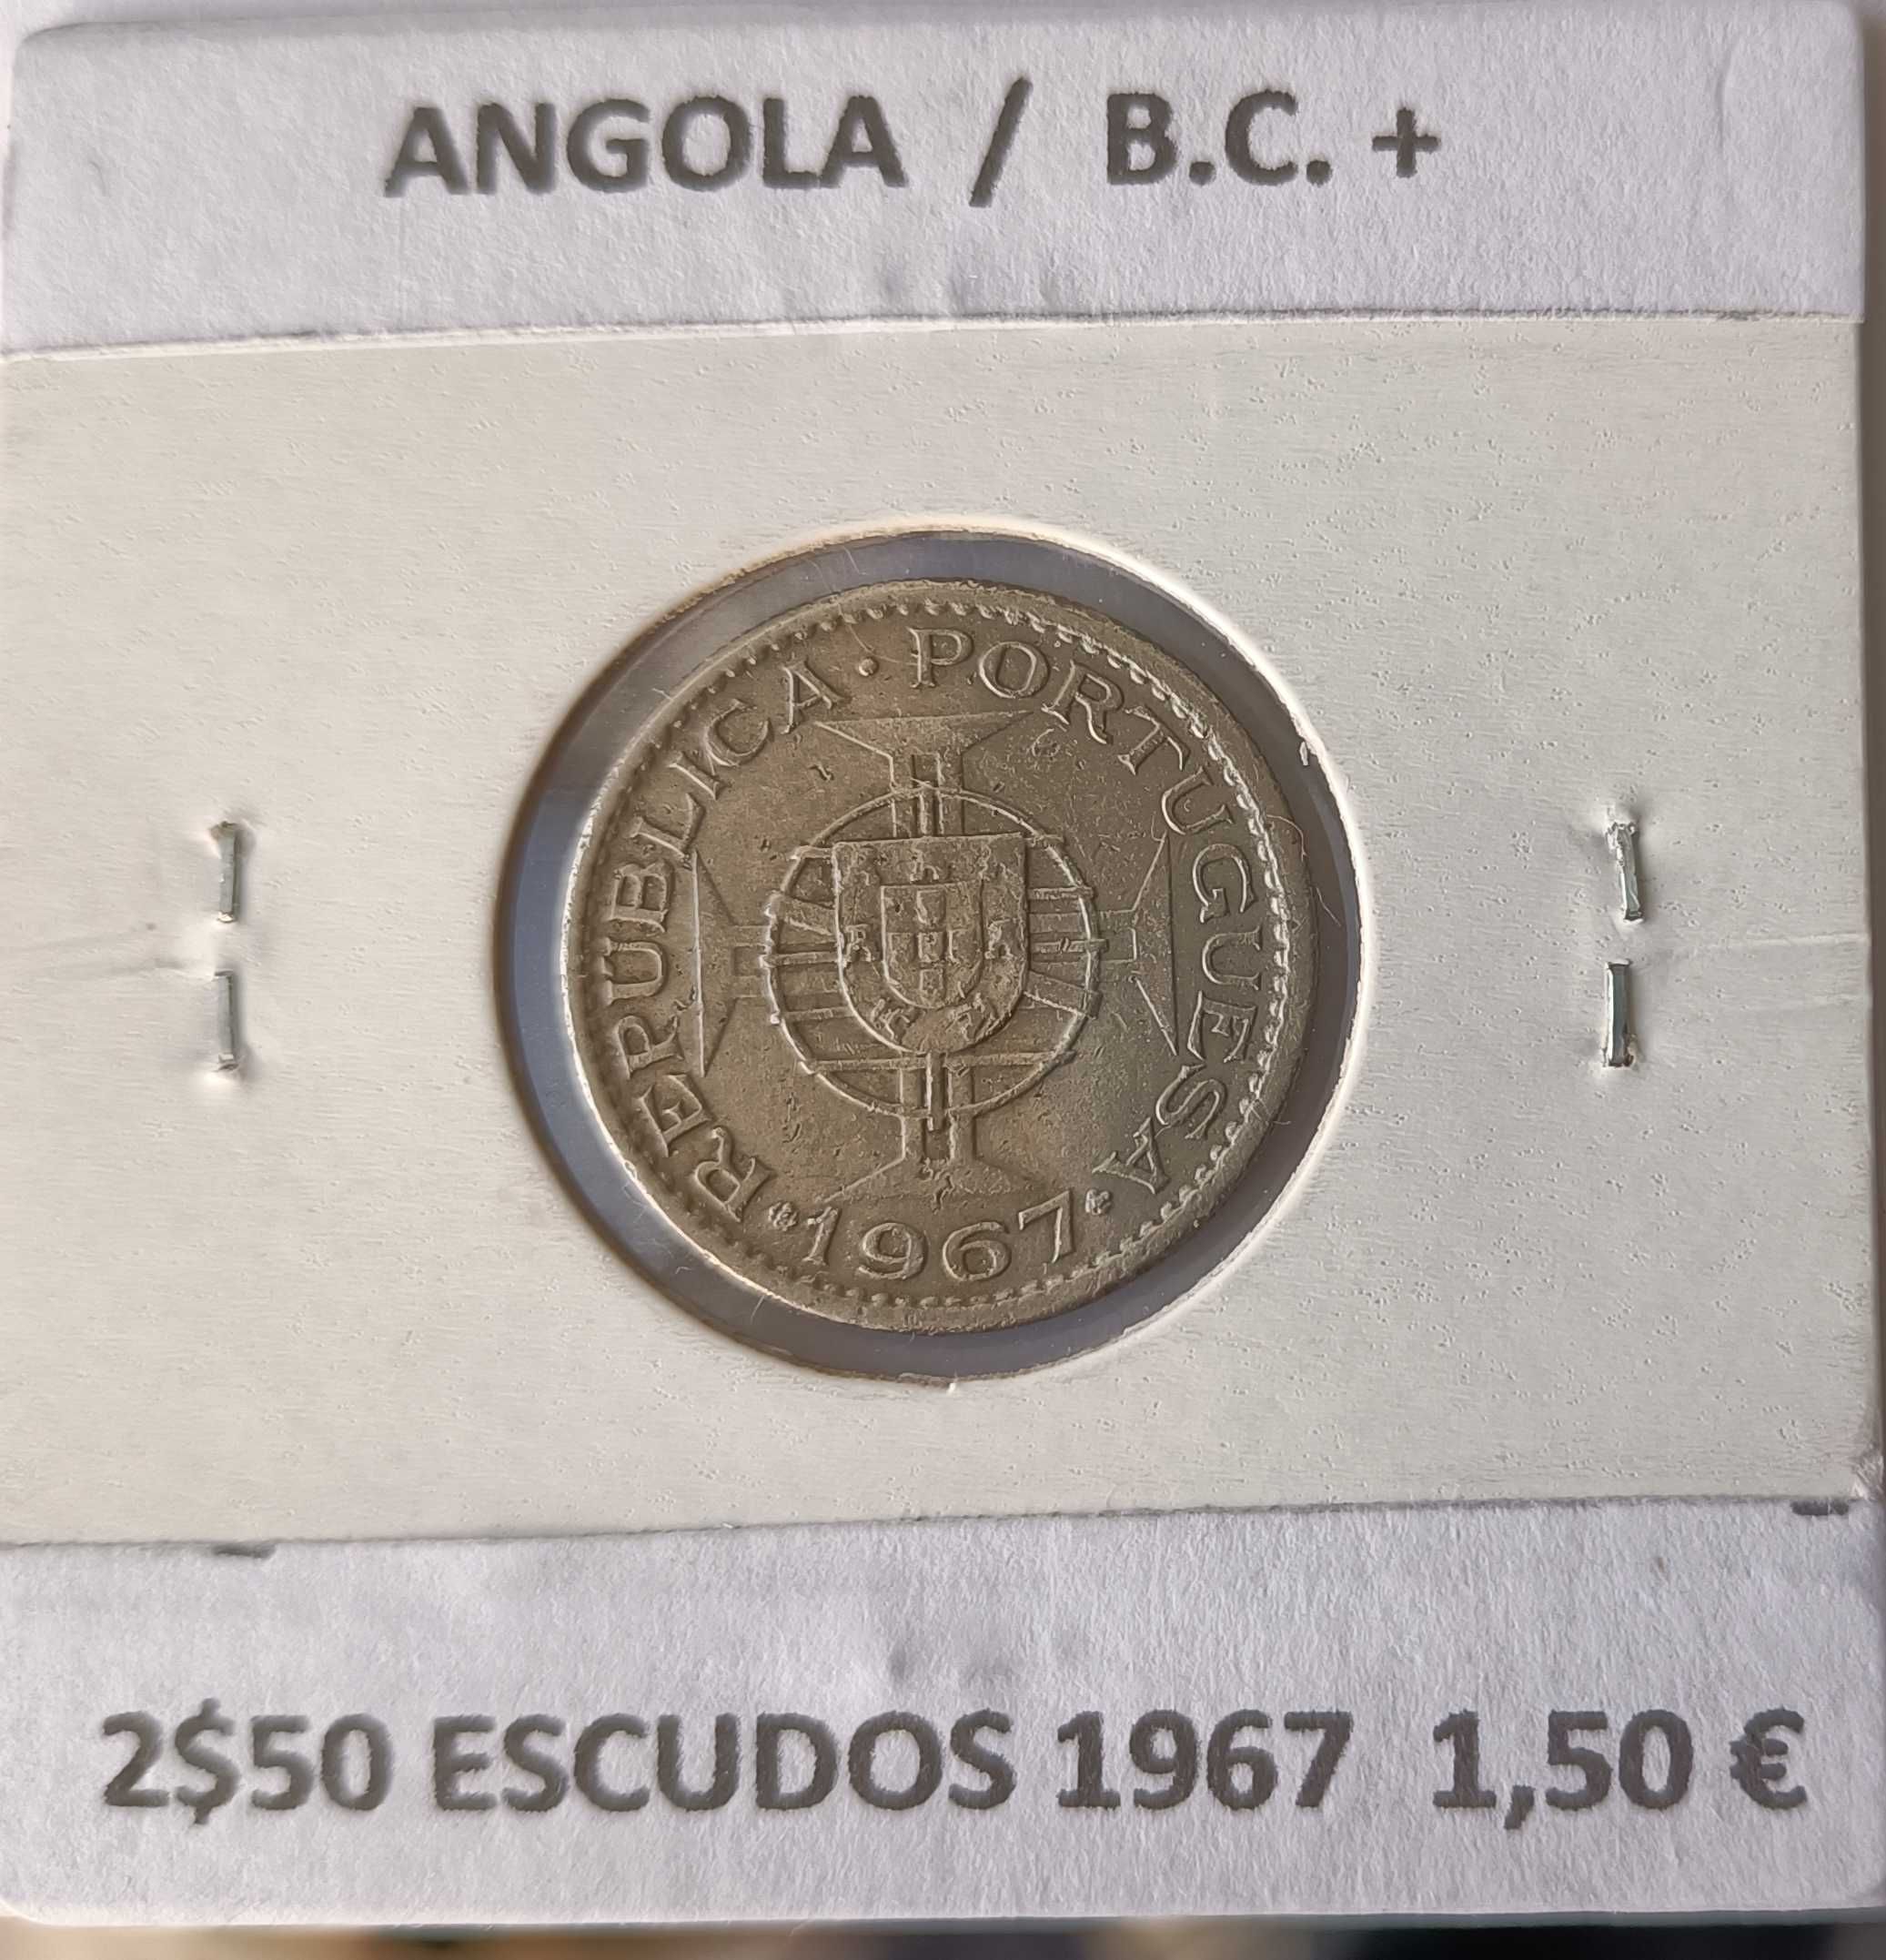 Moedas Portuguesas de 2$50 Escudos da Ex Colónia Ultramarina de Angola